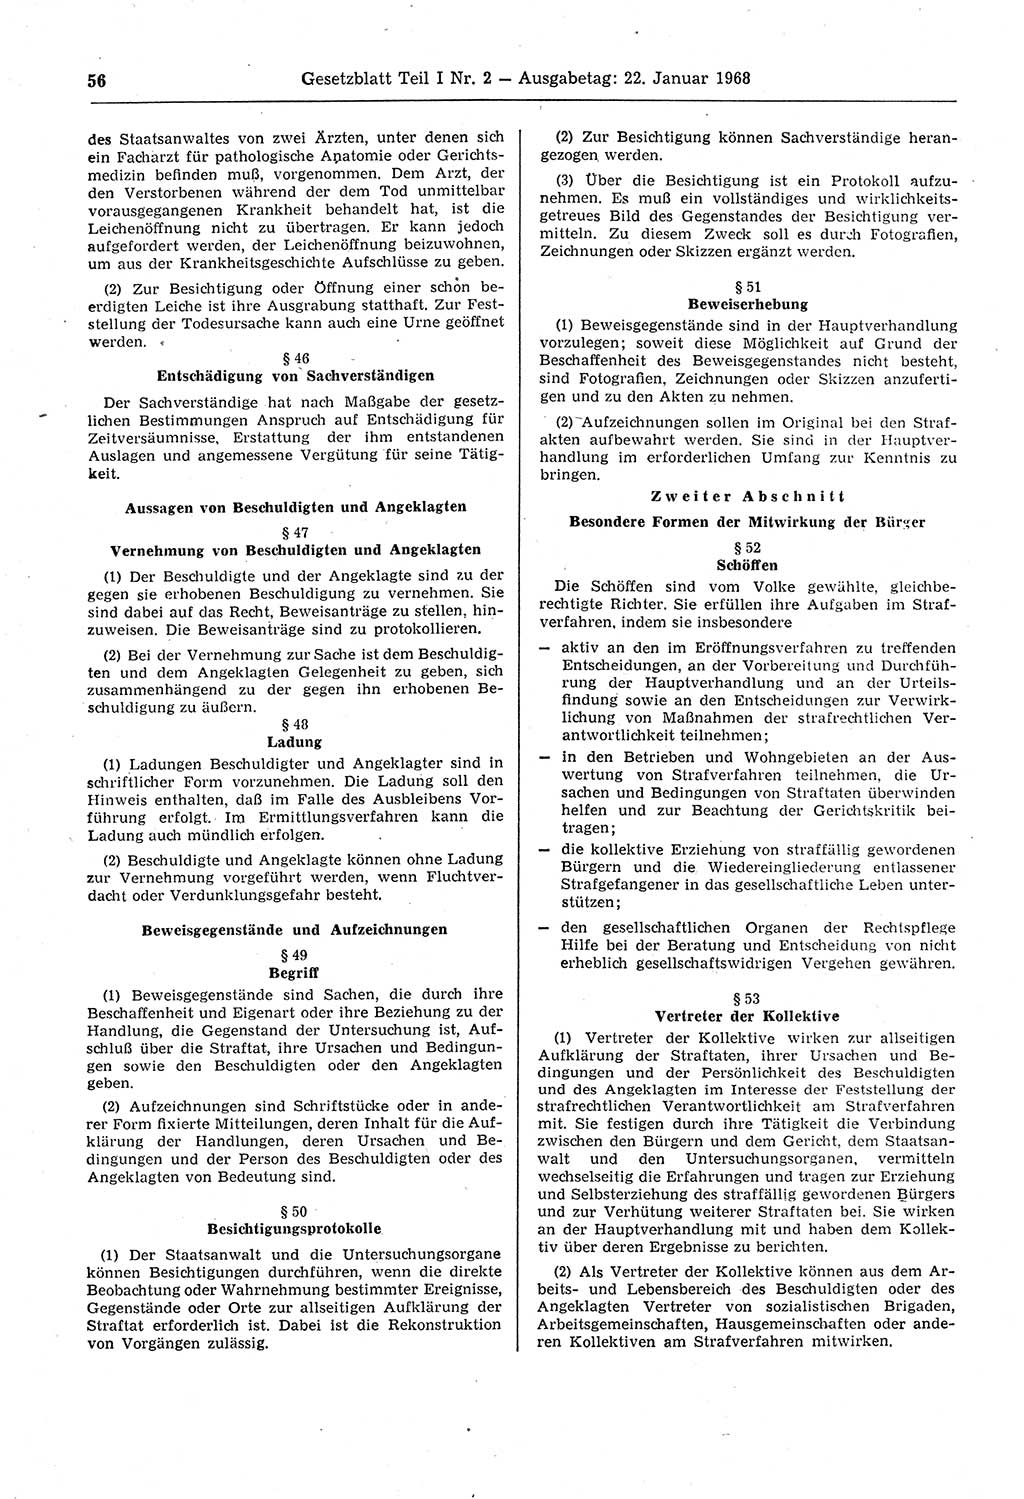 Gesetzblatt (GBl.) der Deutschen Demokratischen Republik (DDR) Teil Ⅰ 1968, Seite 56 (GBl. DDR Ⅰ 1968, S. 56)